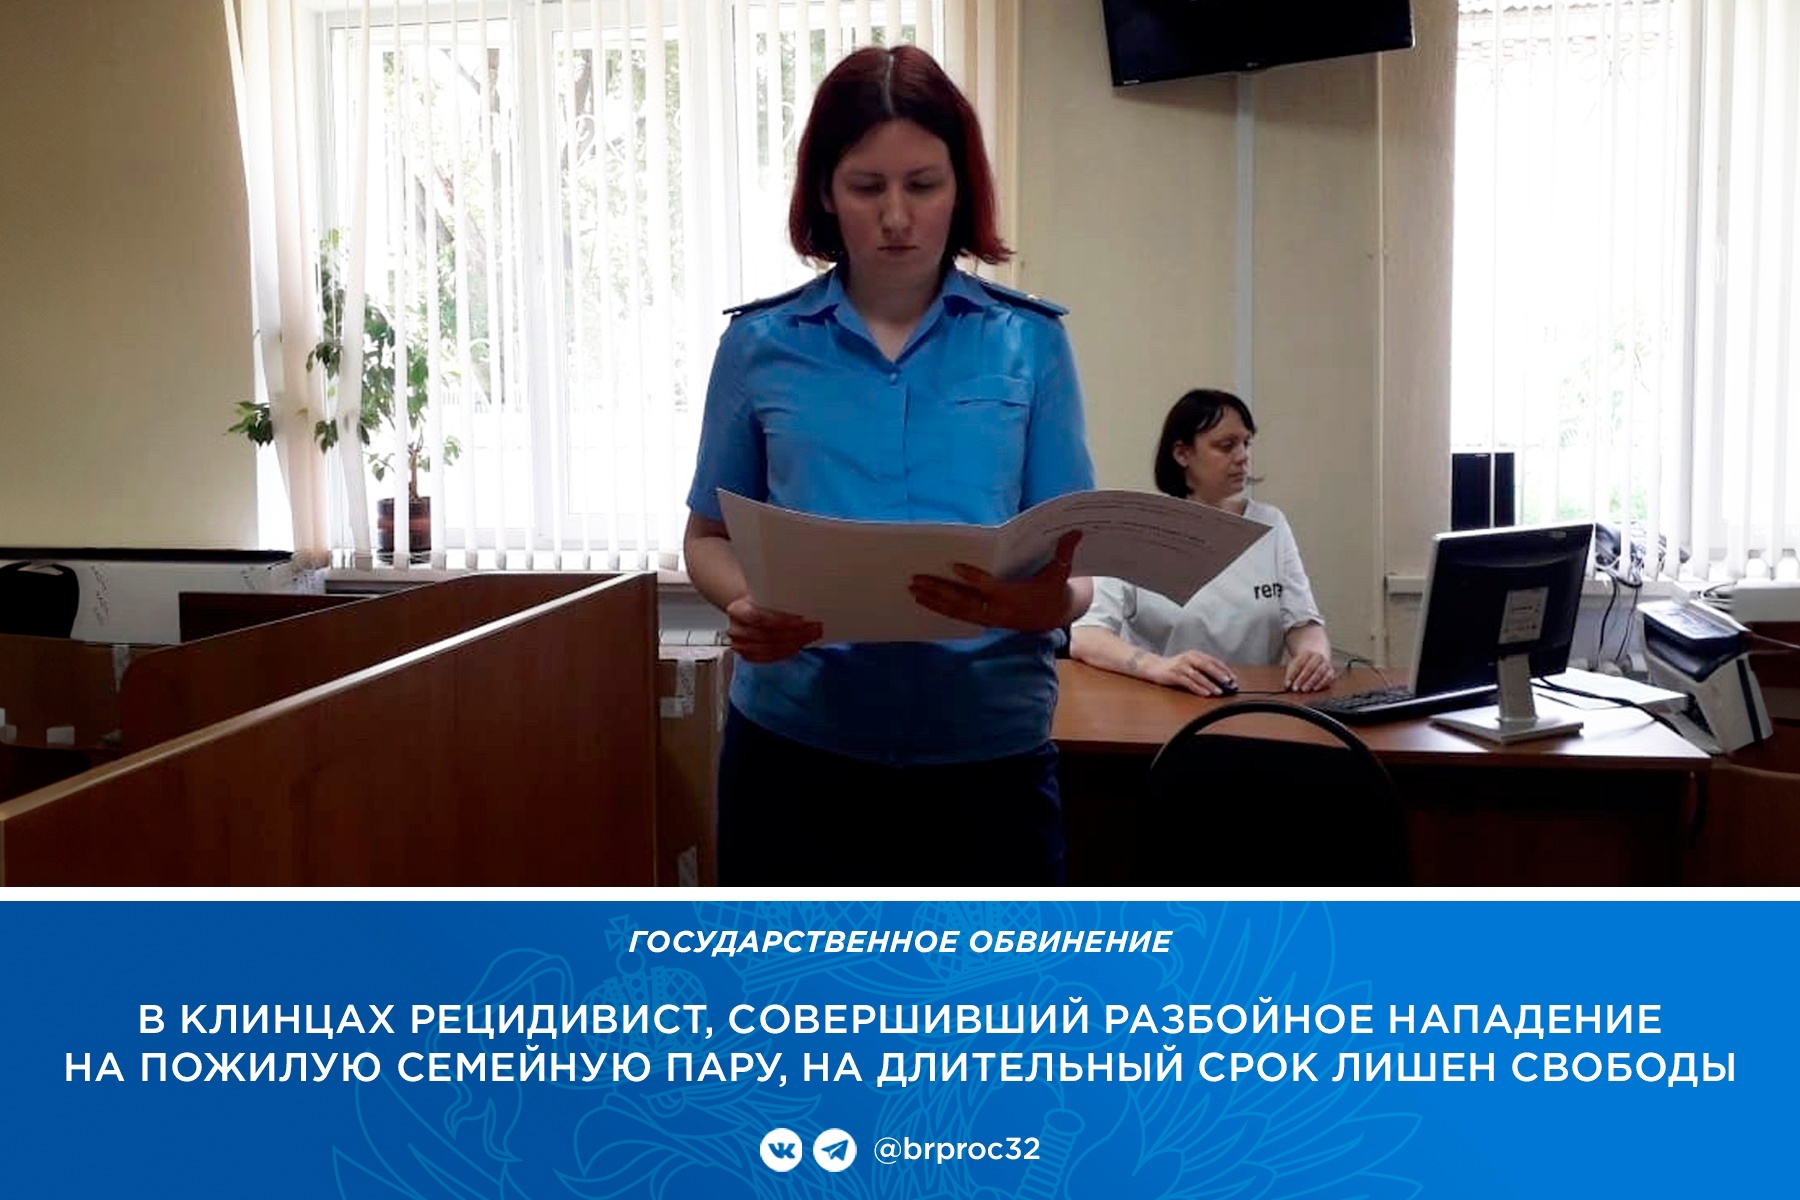 В Клинцах уголовника за нападение на пенсионеров отправили на строгий режим